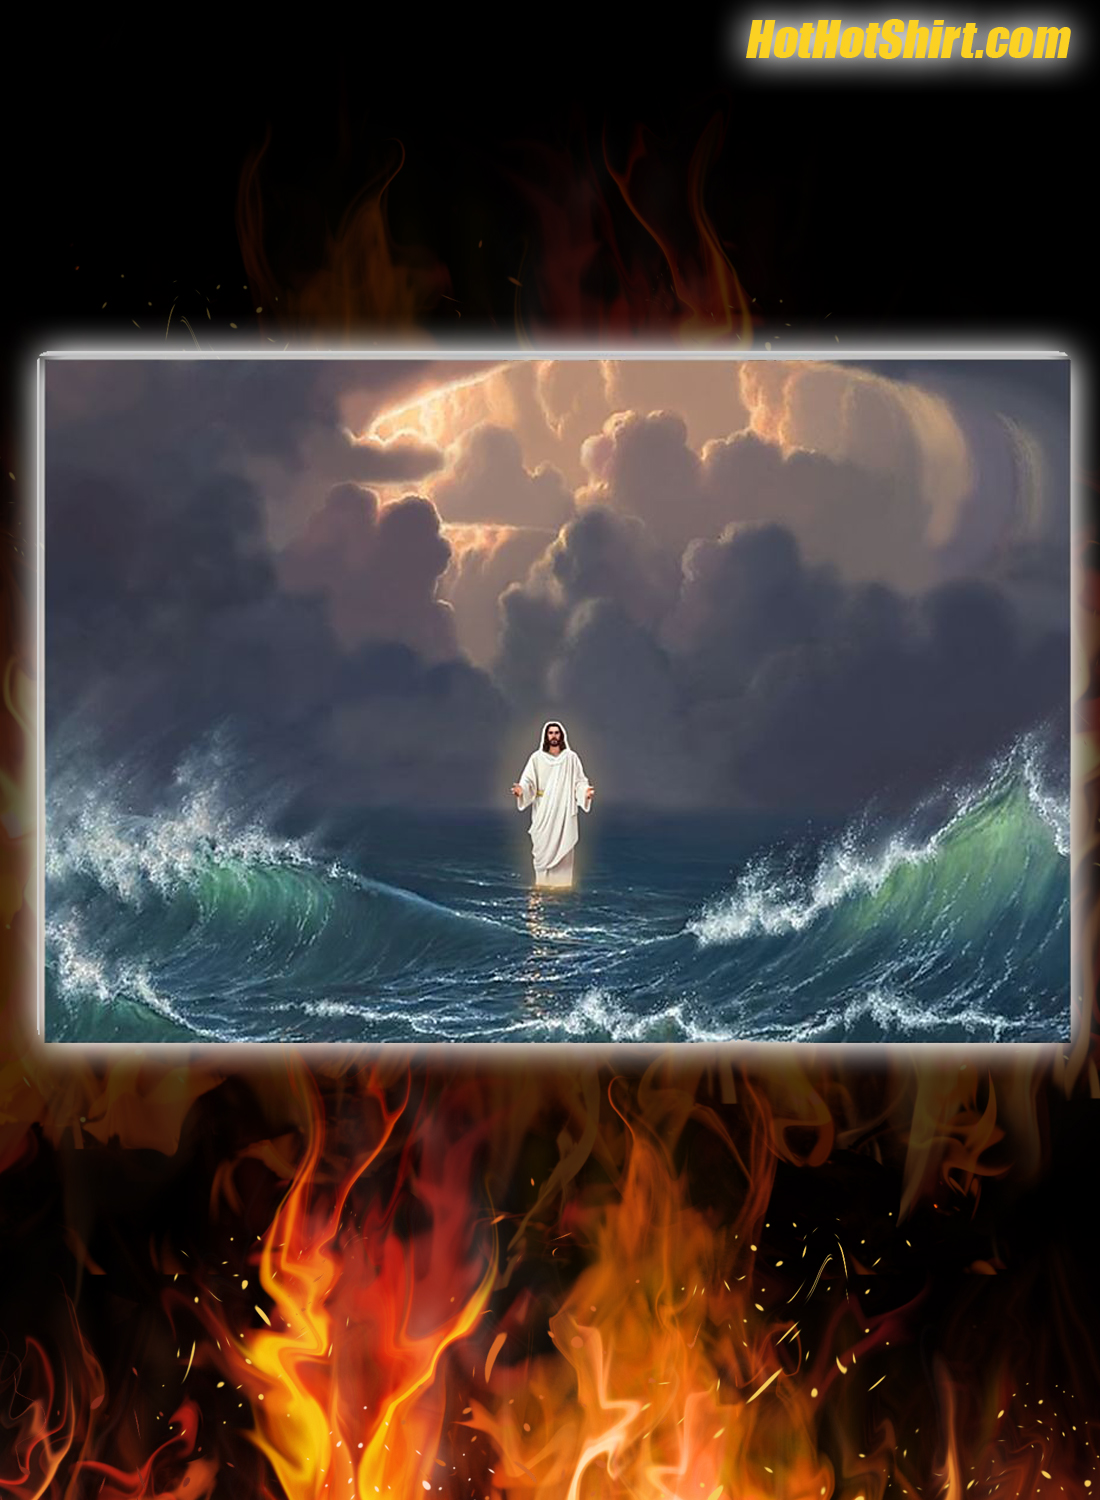 Jesus God walking on water poster